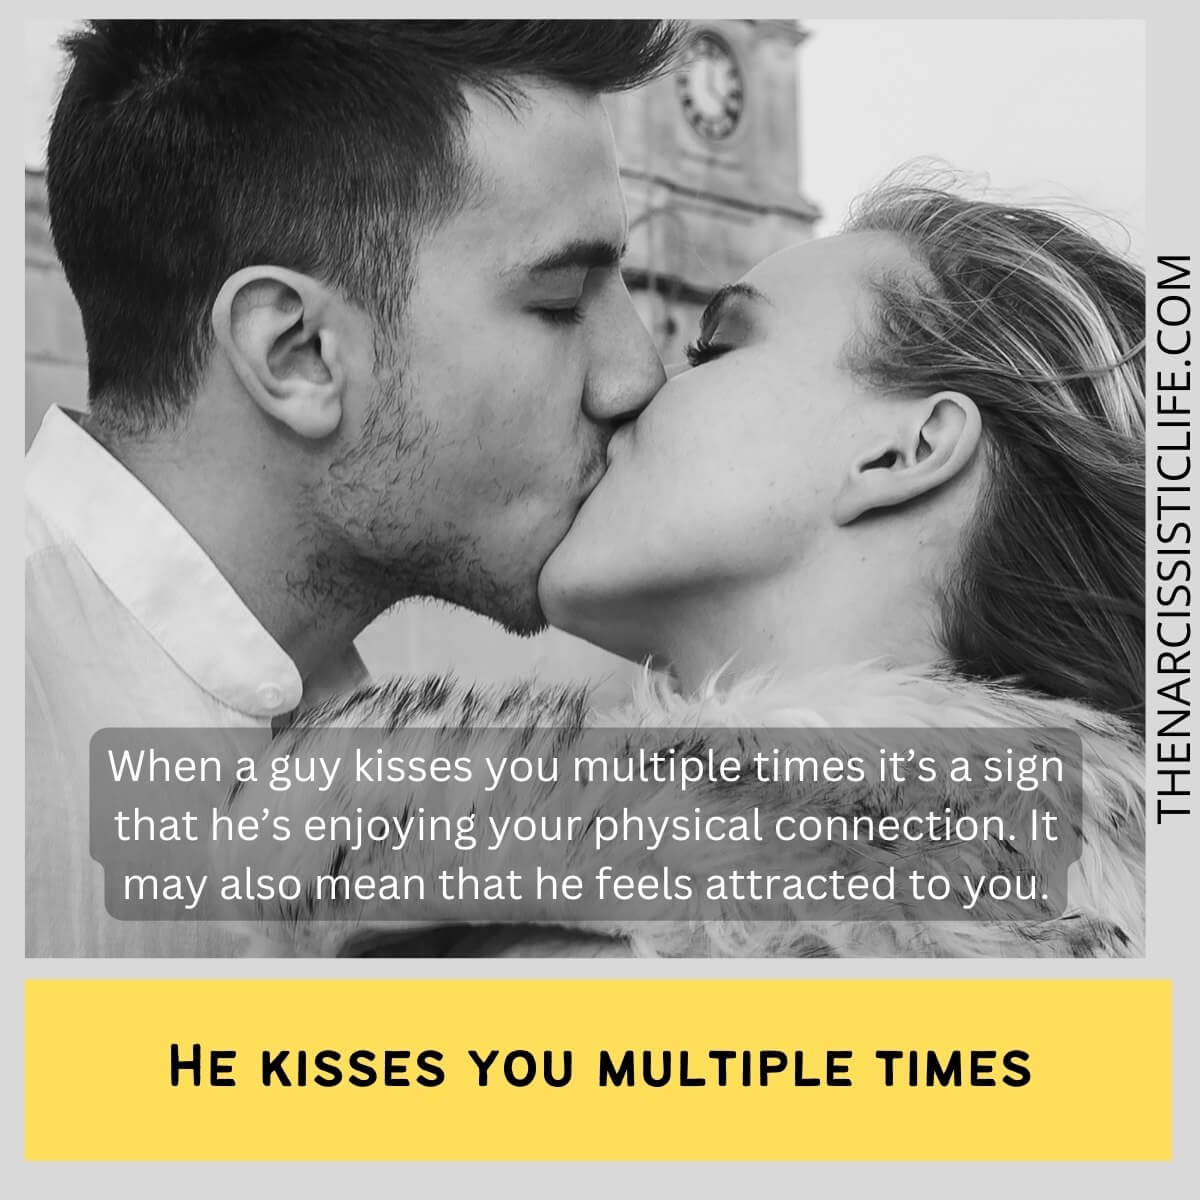 Что означает, когда парень целует вас несколько раз?